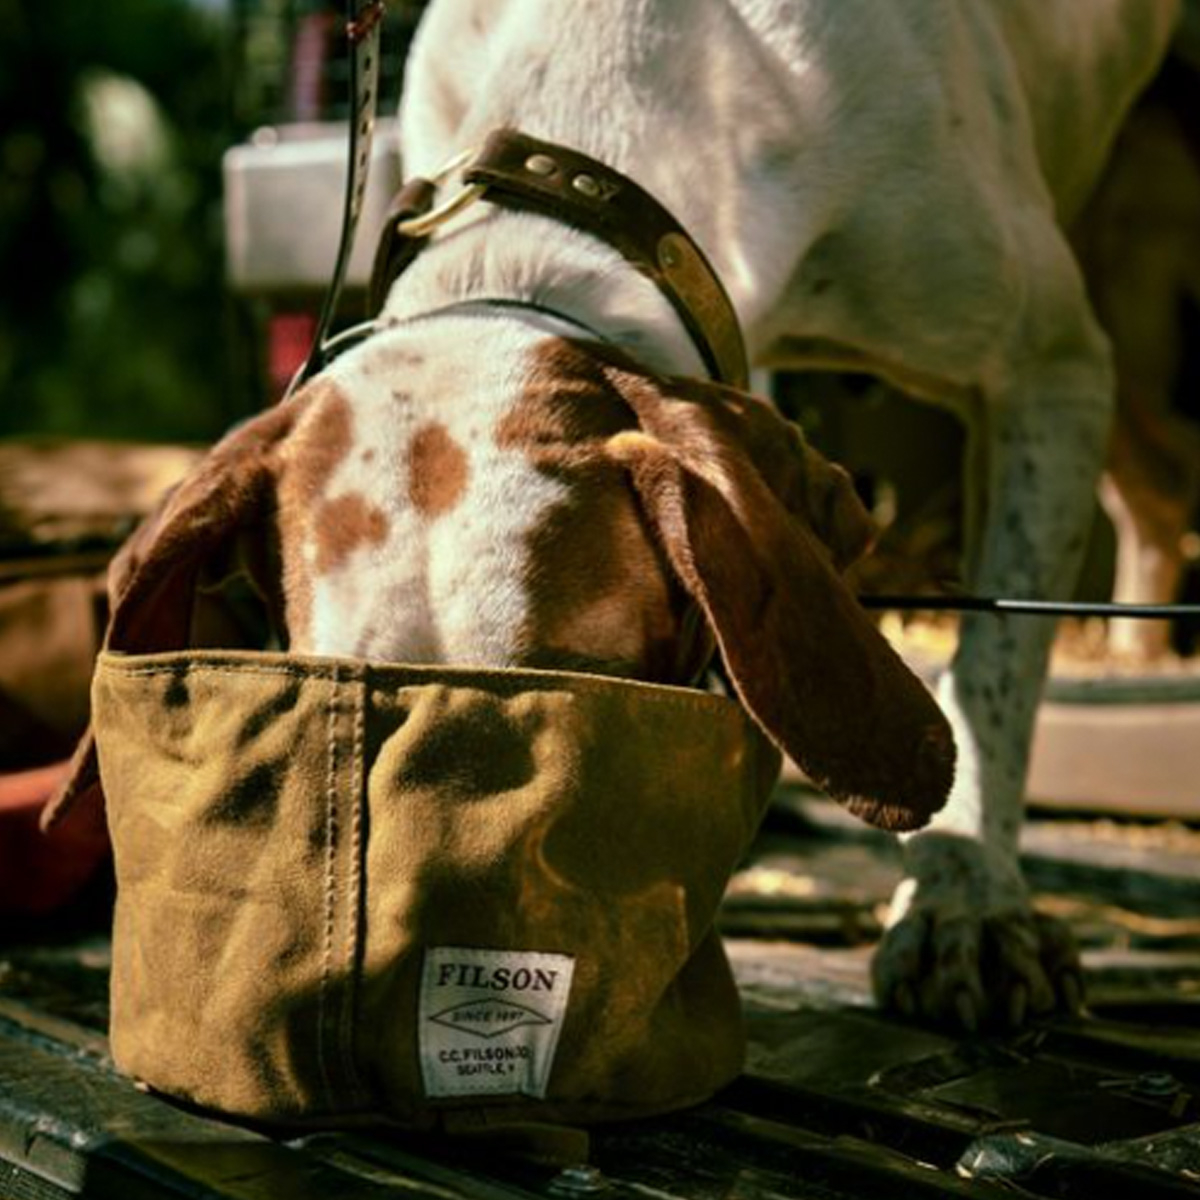 Filson Dog Bowl Dark Tan, opvouwbare voerbak voor honden onderweg